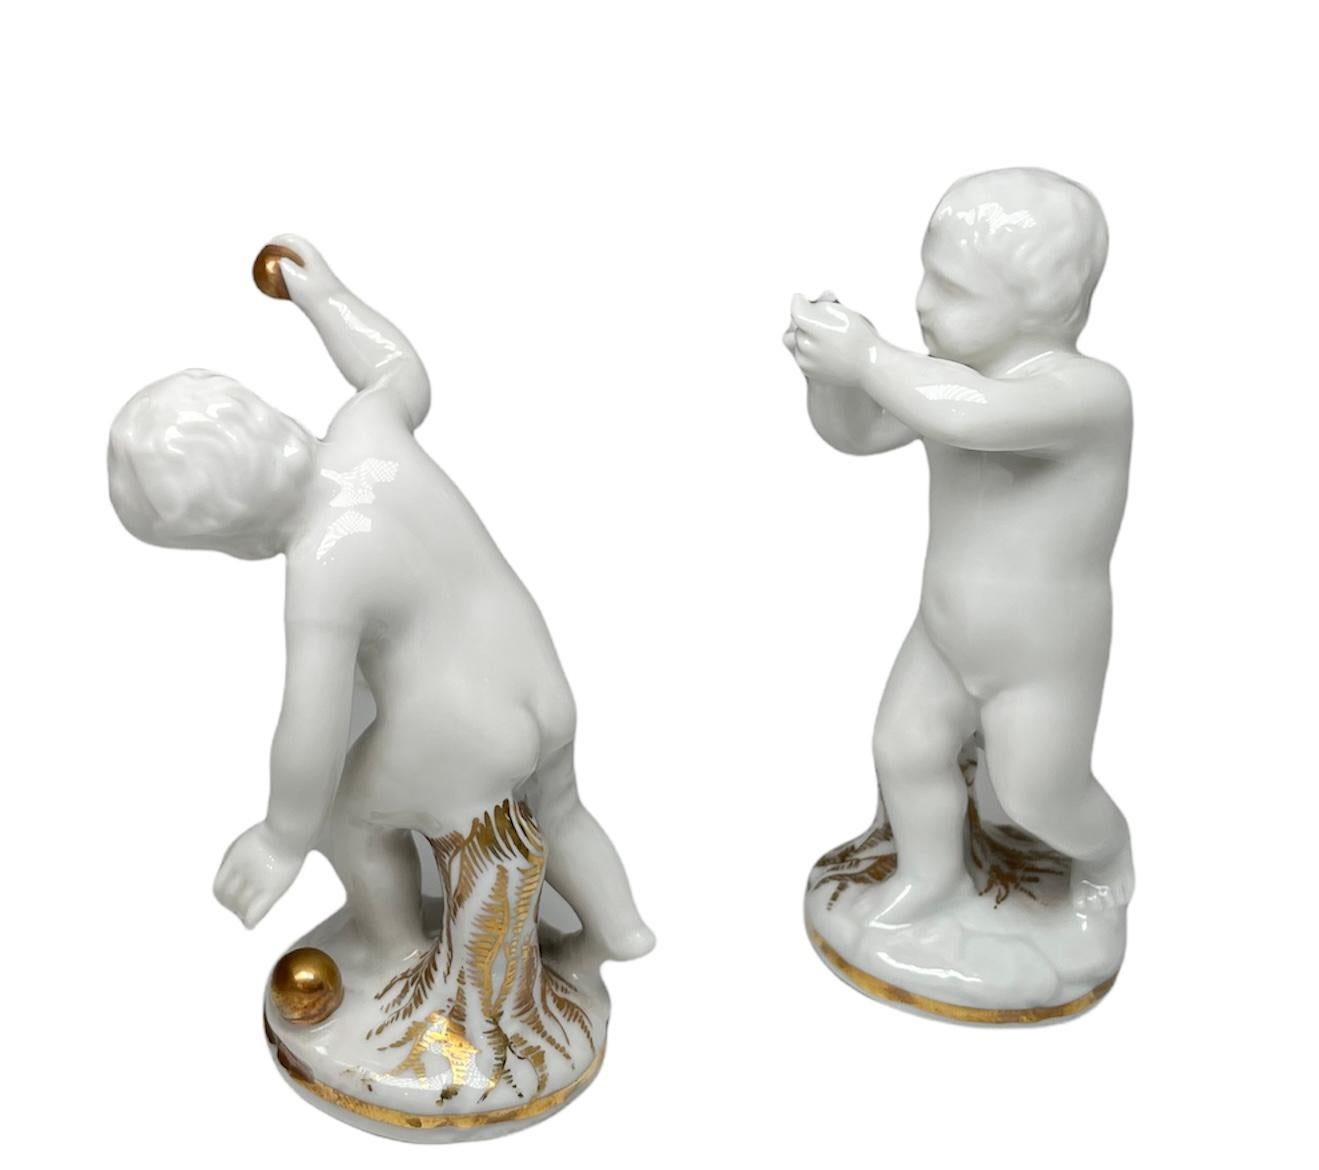 Italian Capodimonte Glazed White Parian Porcelain Cherubs For Sale